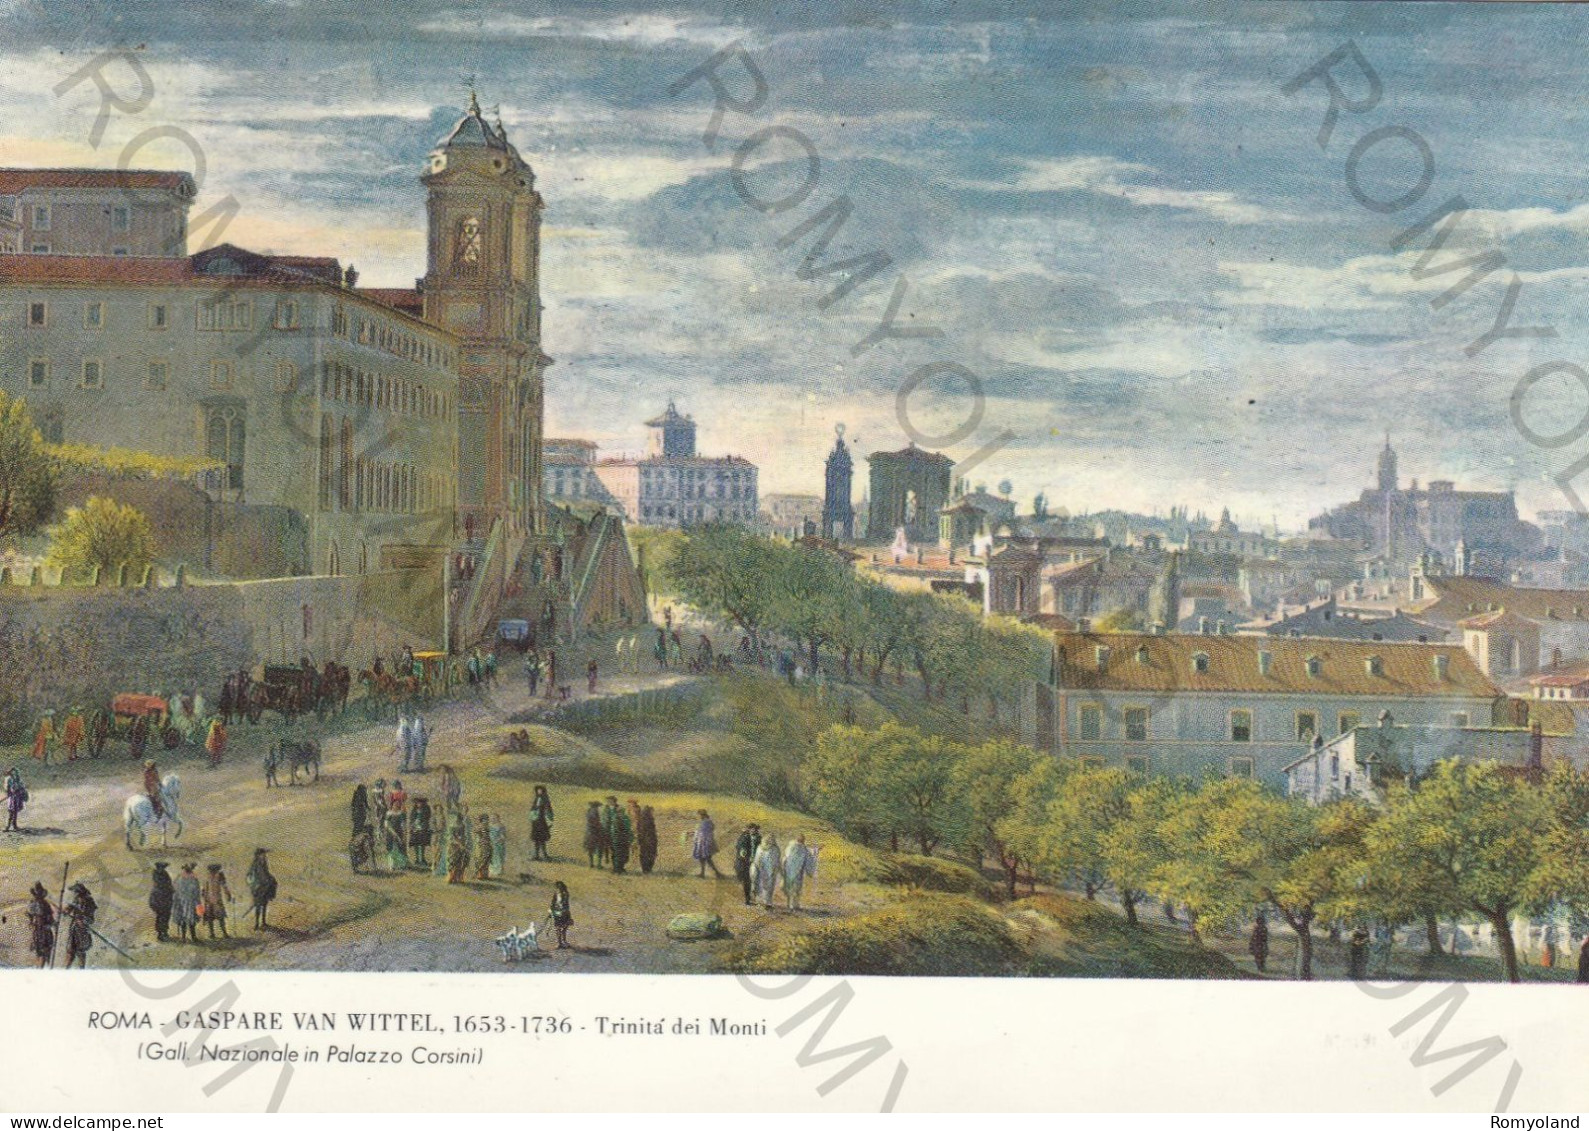 CARTOLINA  ROMA,LAZIO-GALL.NAZIONALE IN PALAZZO CORSINI-GASPARE VAN WITTEL 1653-1736 TRINITA DEI MONTI-NON VIAGGIATA - Ausstellungen